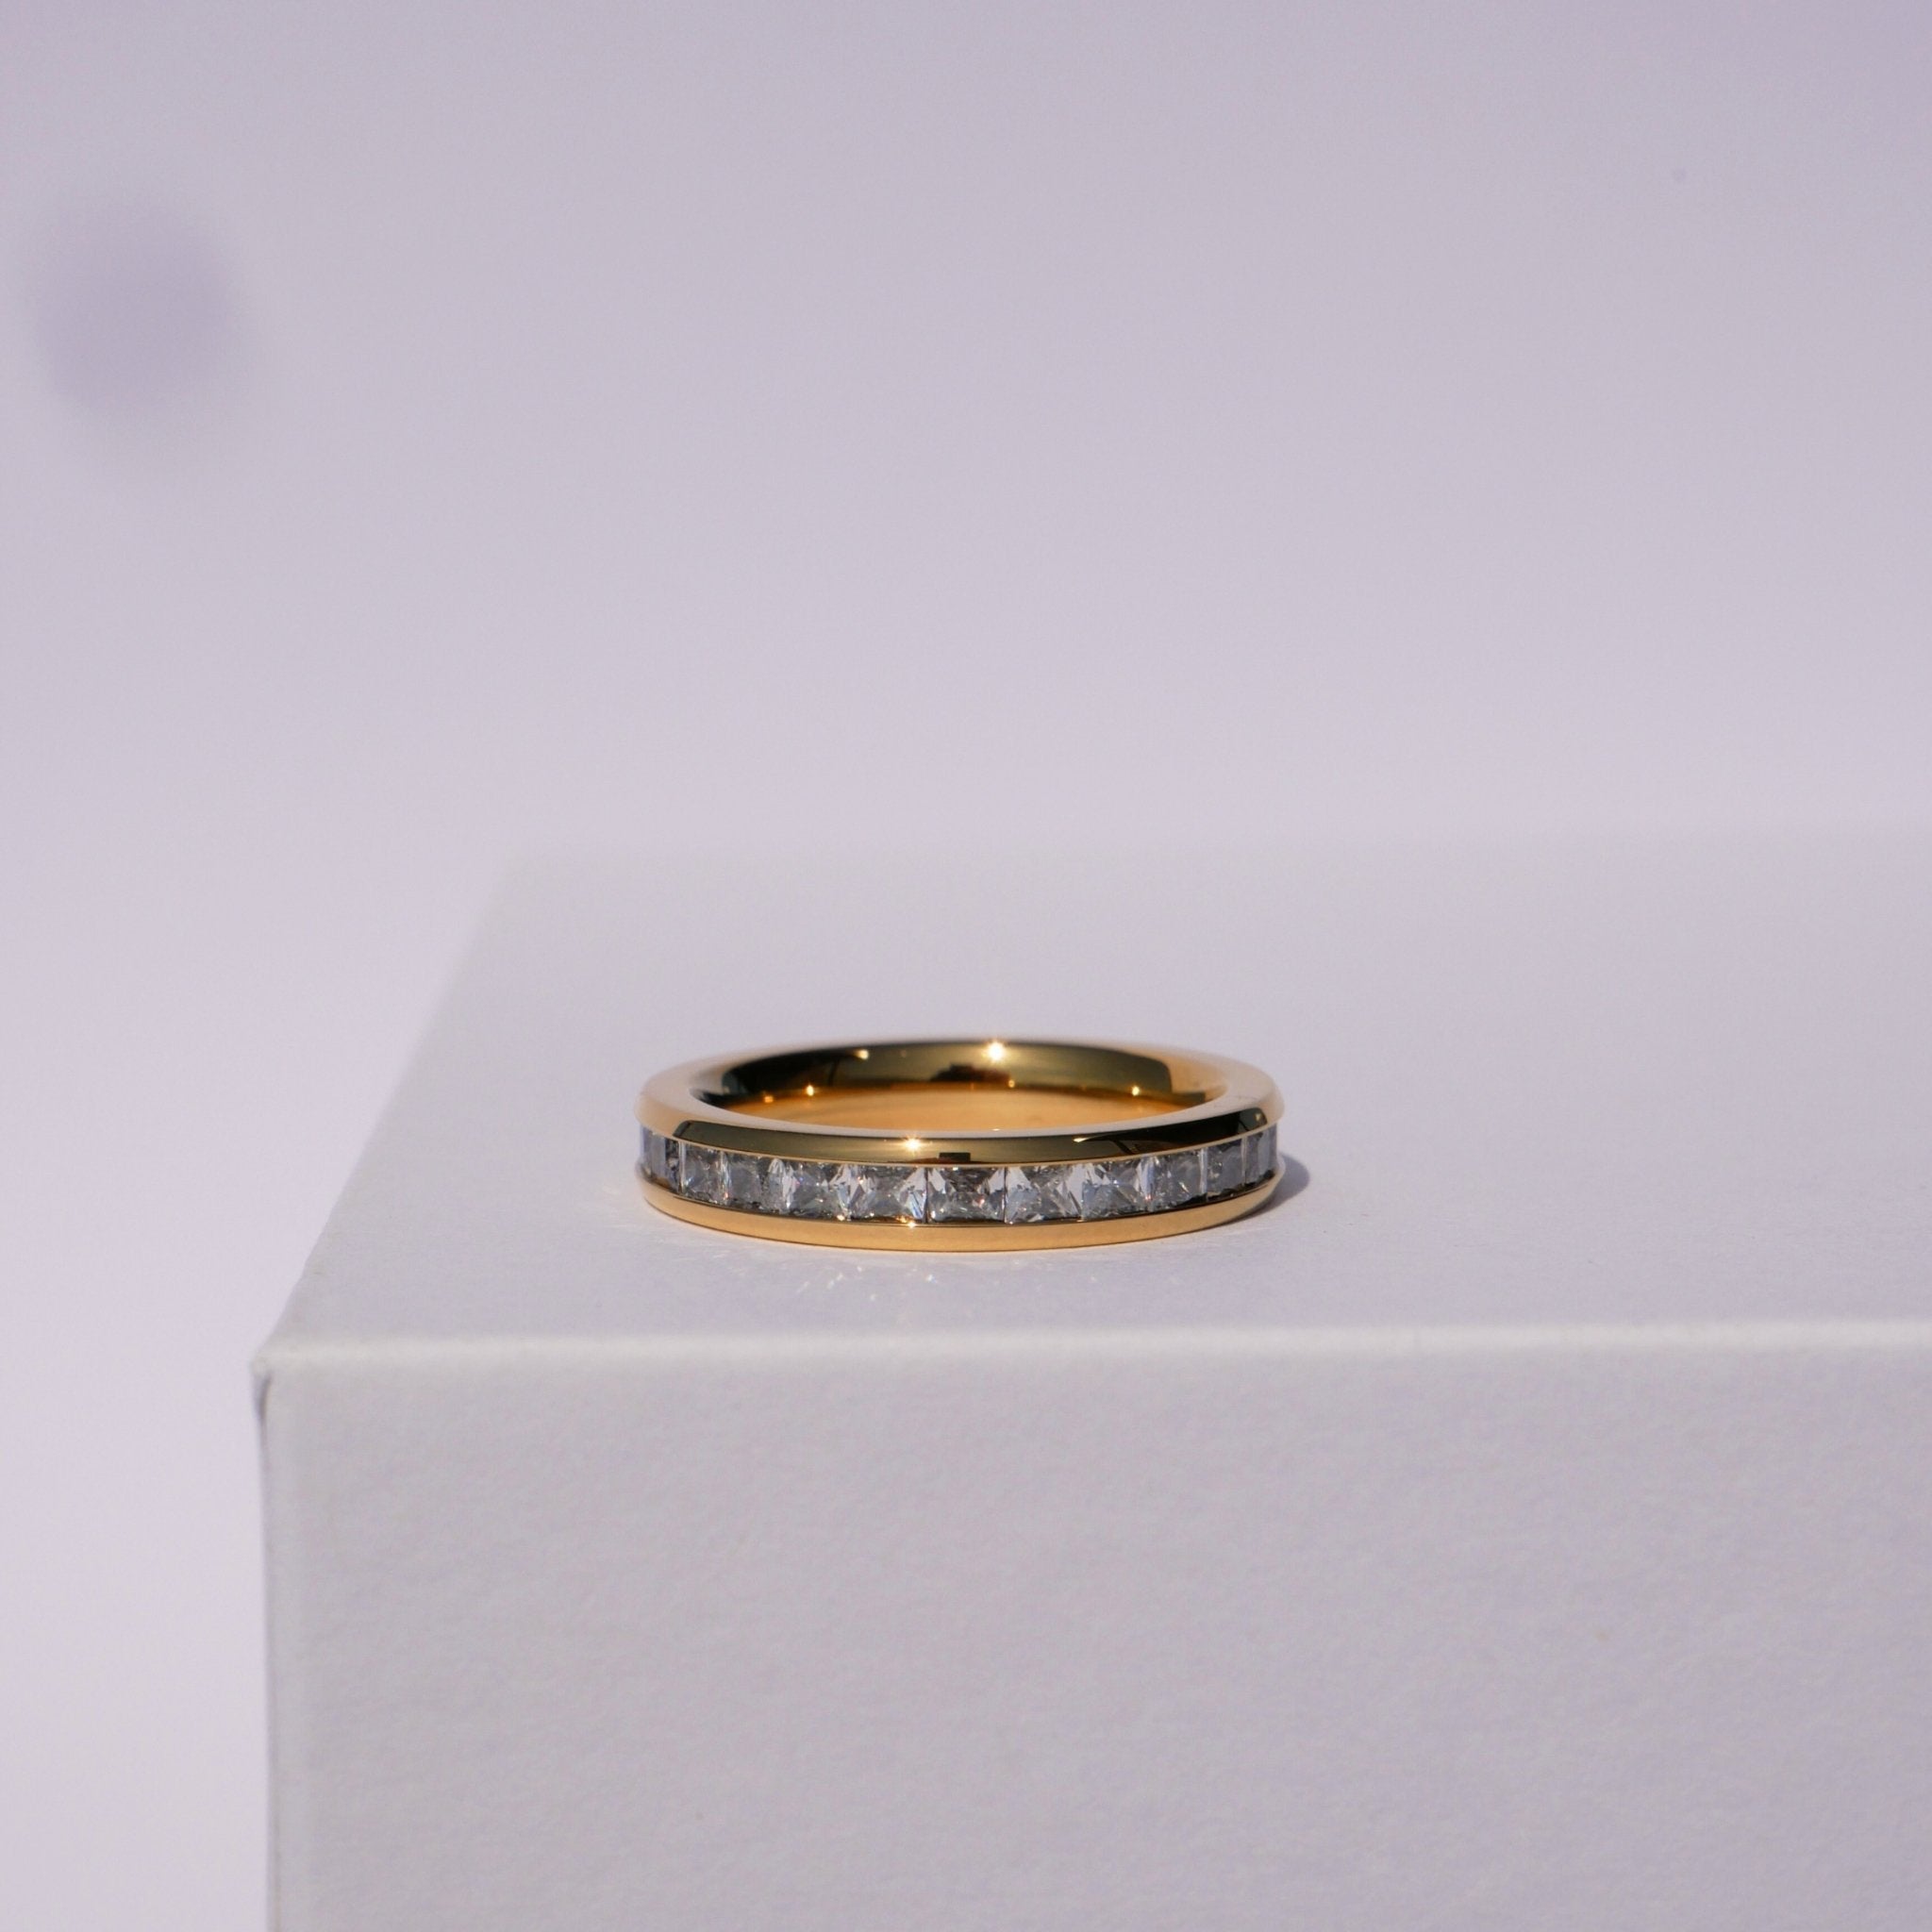 Hannah Zirconia Eternity Ring by Koréil Jewelry